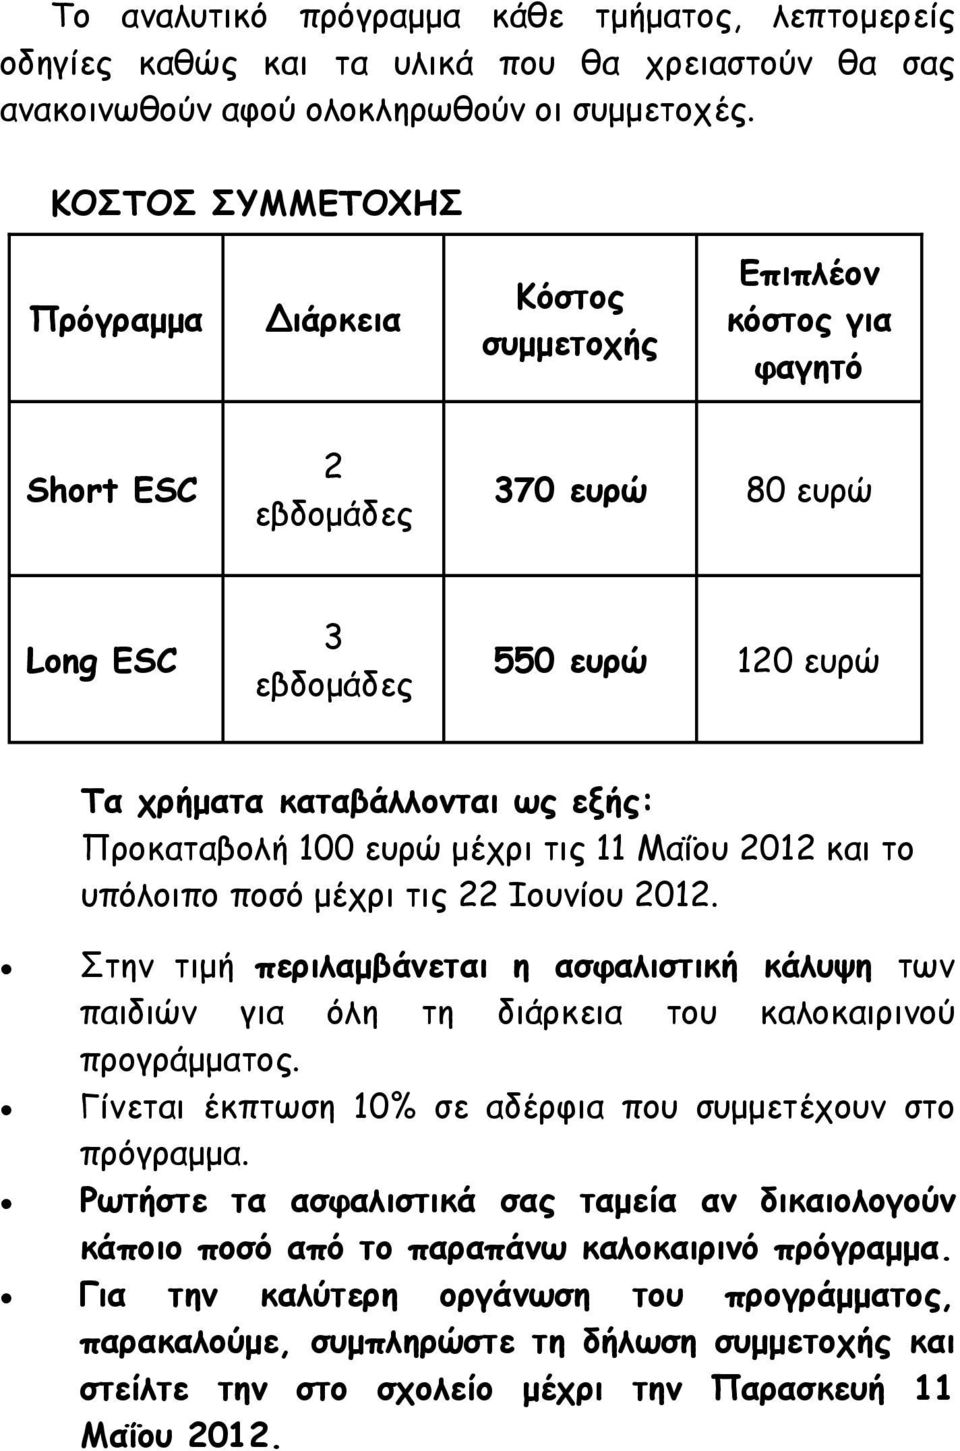 Προκαταβολή 100 ευρώ µέχρι τις 11 Μαΐου 2012 και το υπόλοιπο ποσό µέχρι τις 22 Ιουνίου 2012.